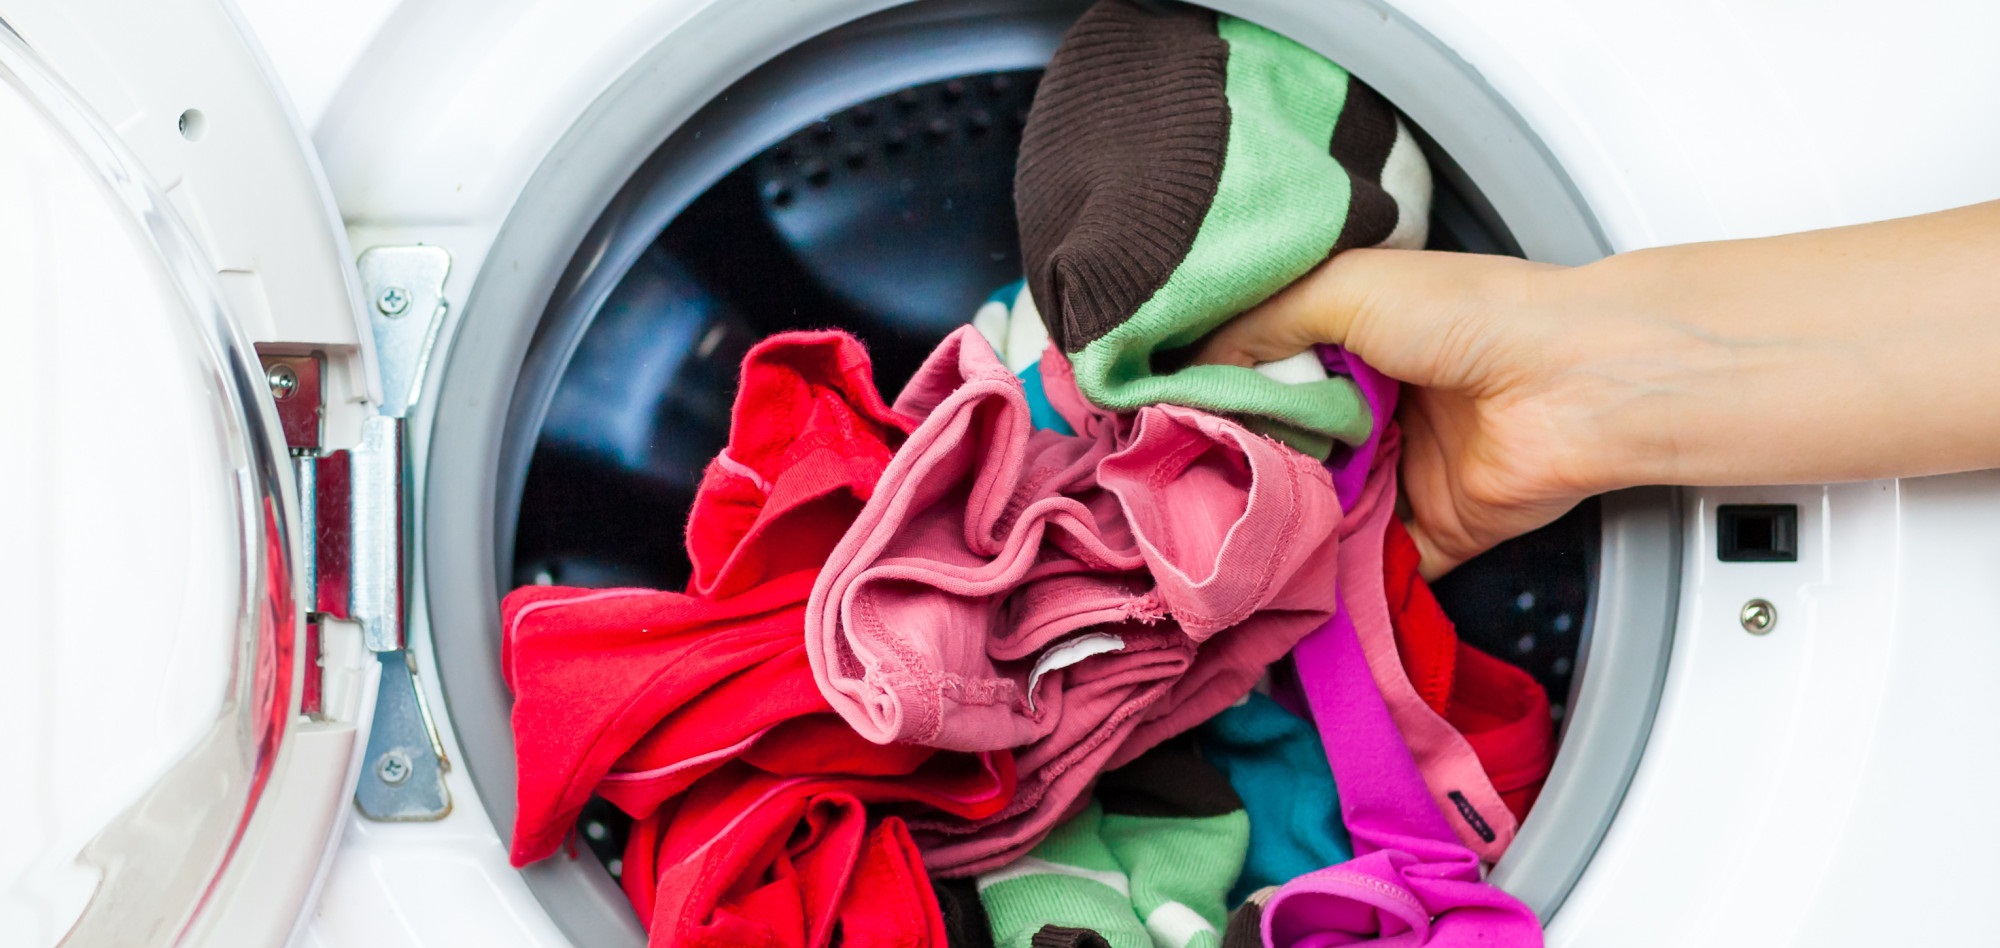 V pračce Indesit je příliš mnoho prádla 